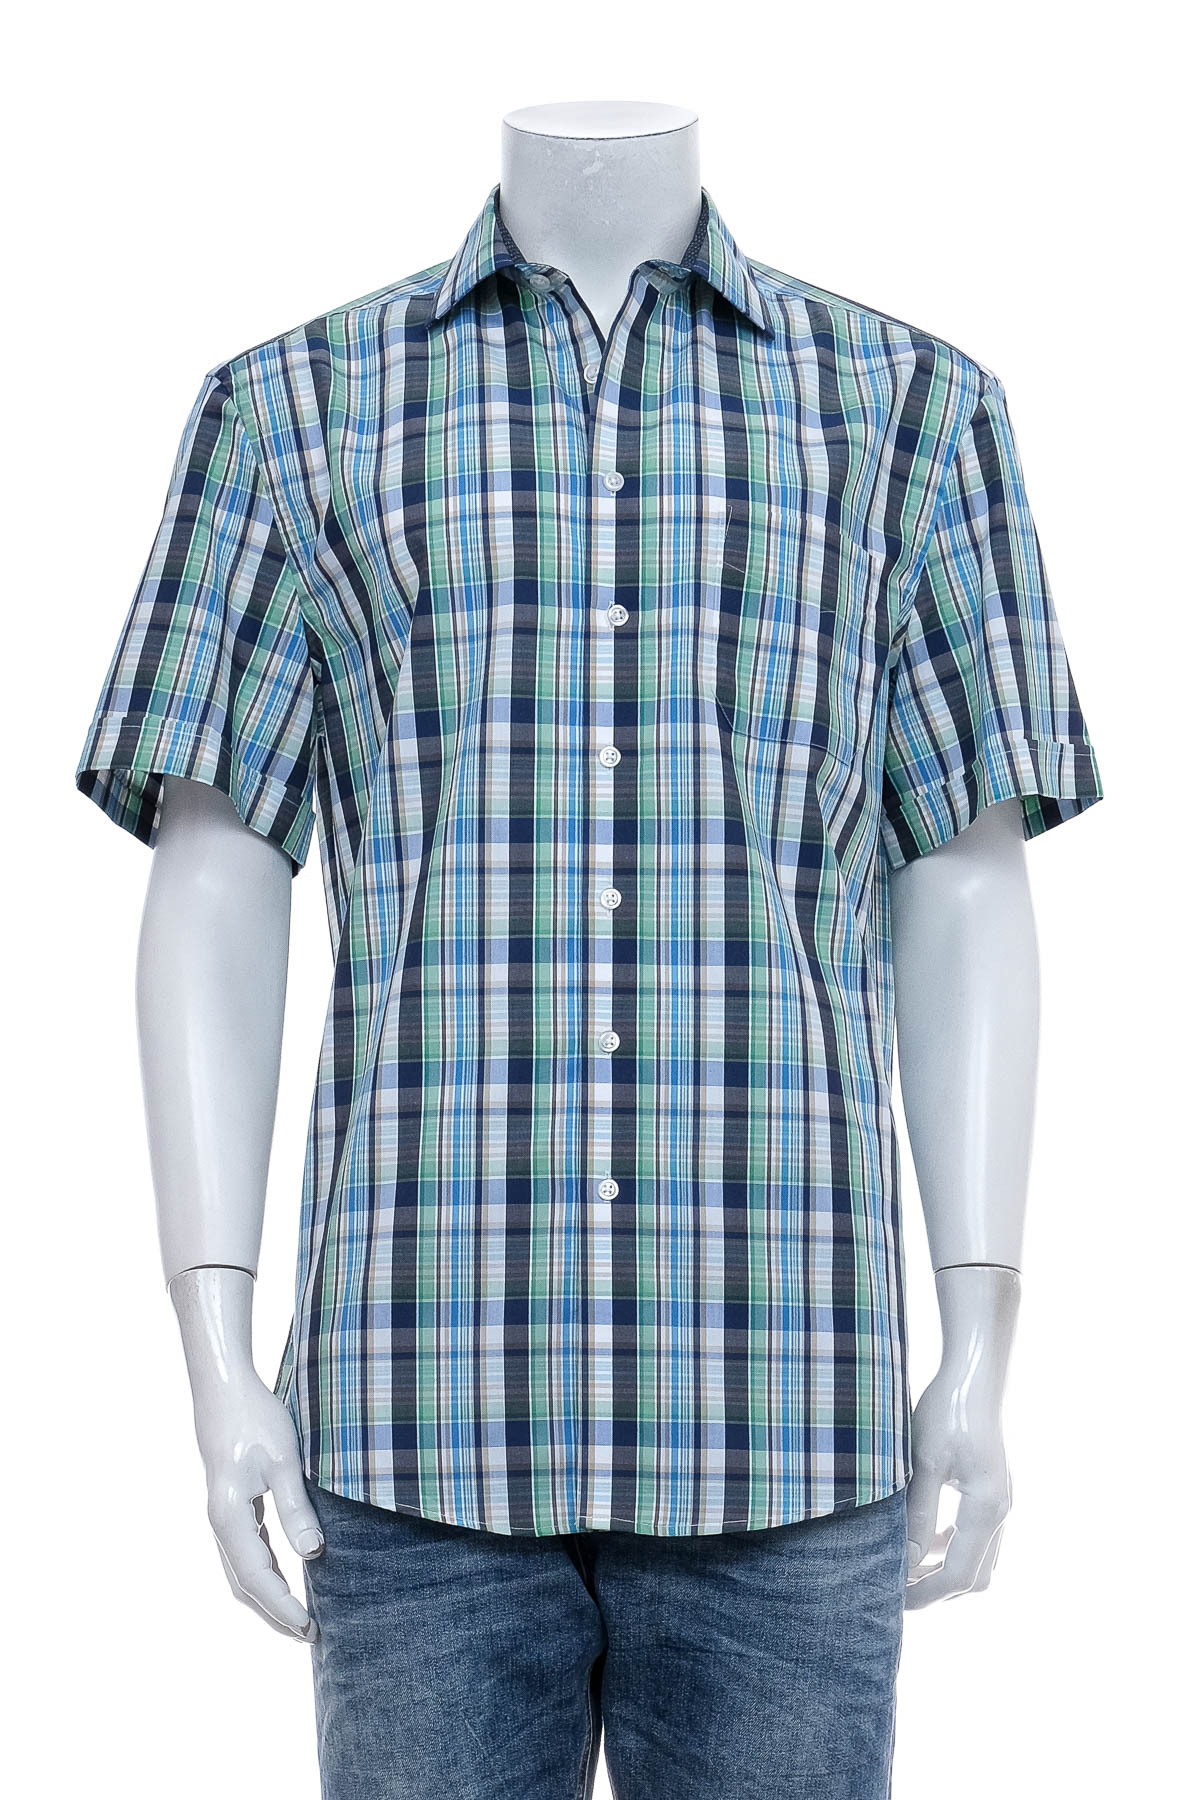 Ανδρικό πουκάμισο - Bexleys - 0